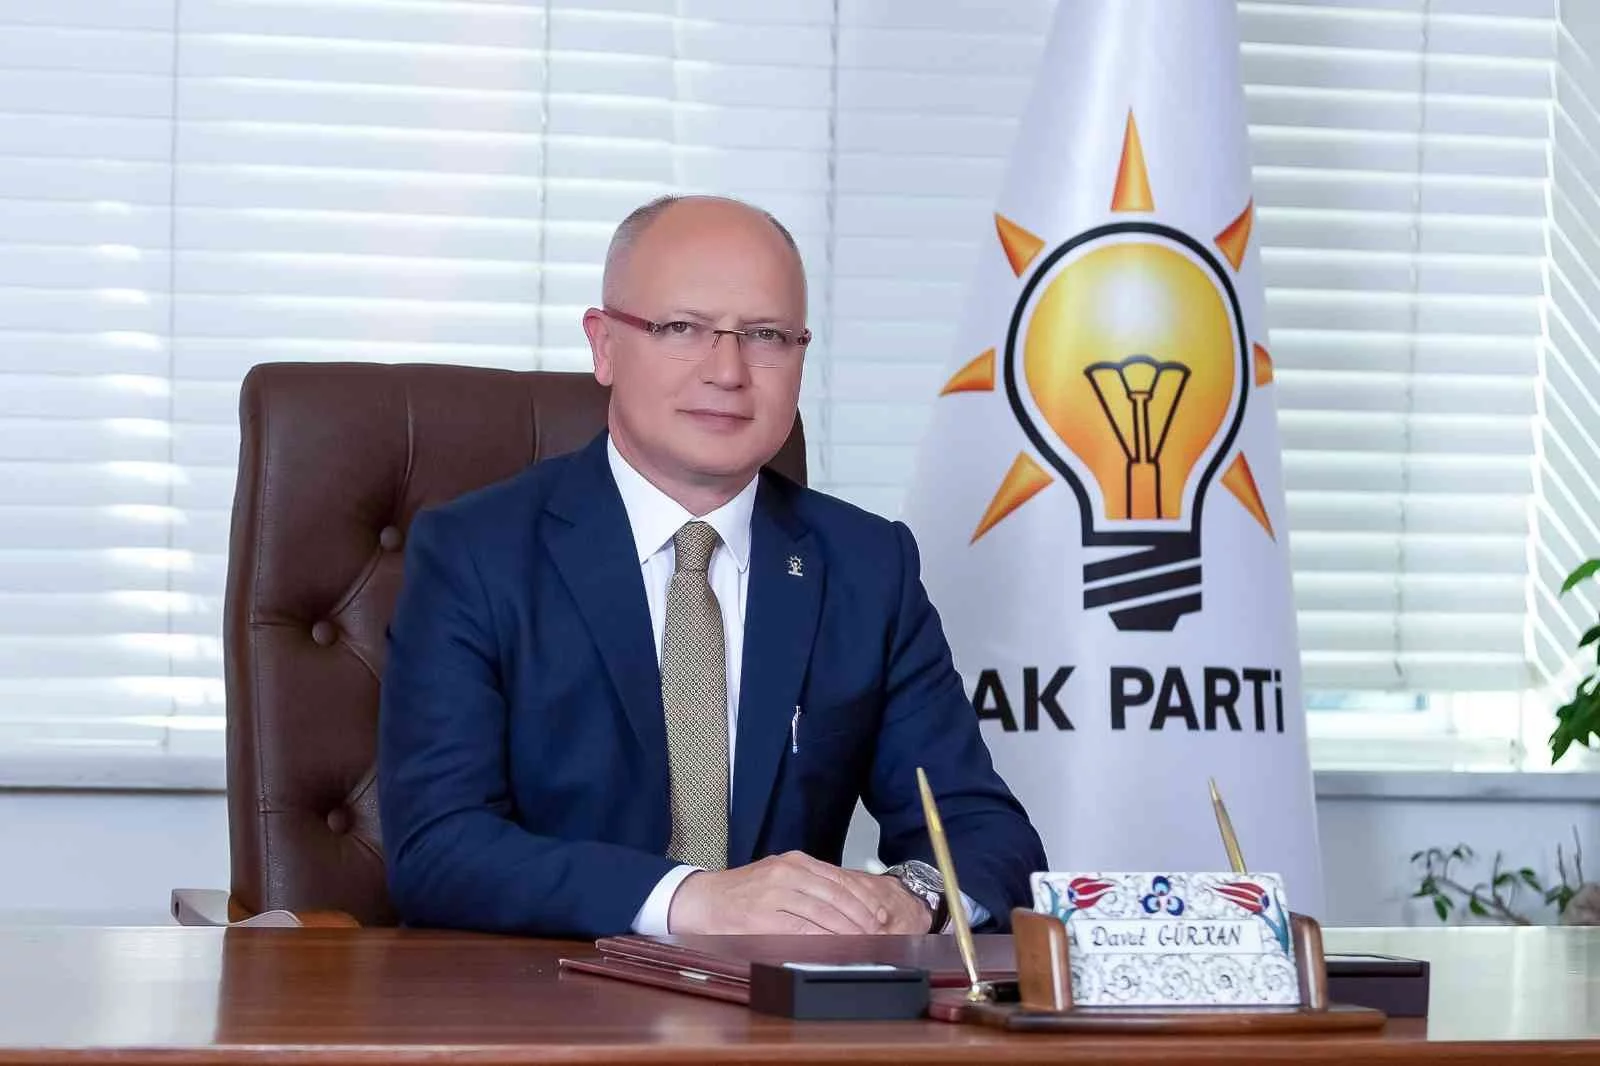 (Özel) AK Parti Bursa İl Başkanı Gürkan: “Açıklanan büyük proje Çataltepeye ivme kazandırır”